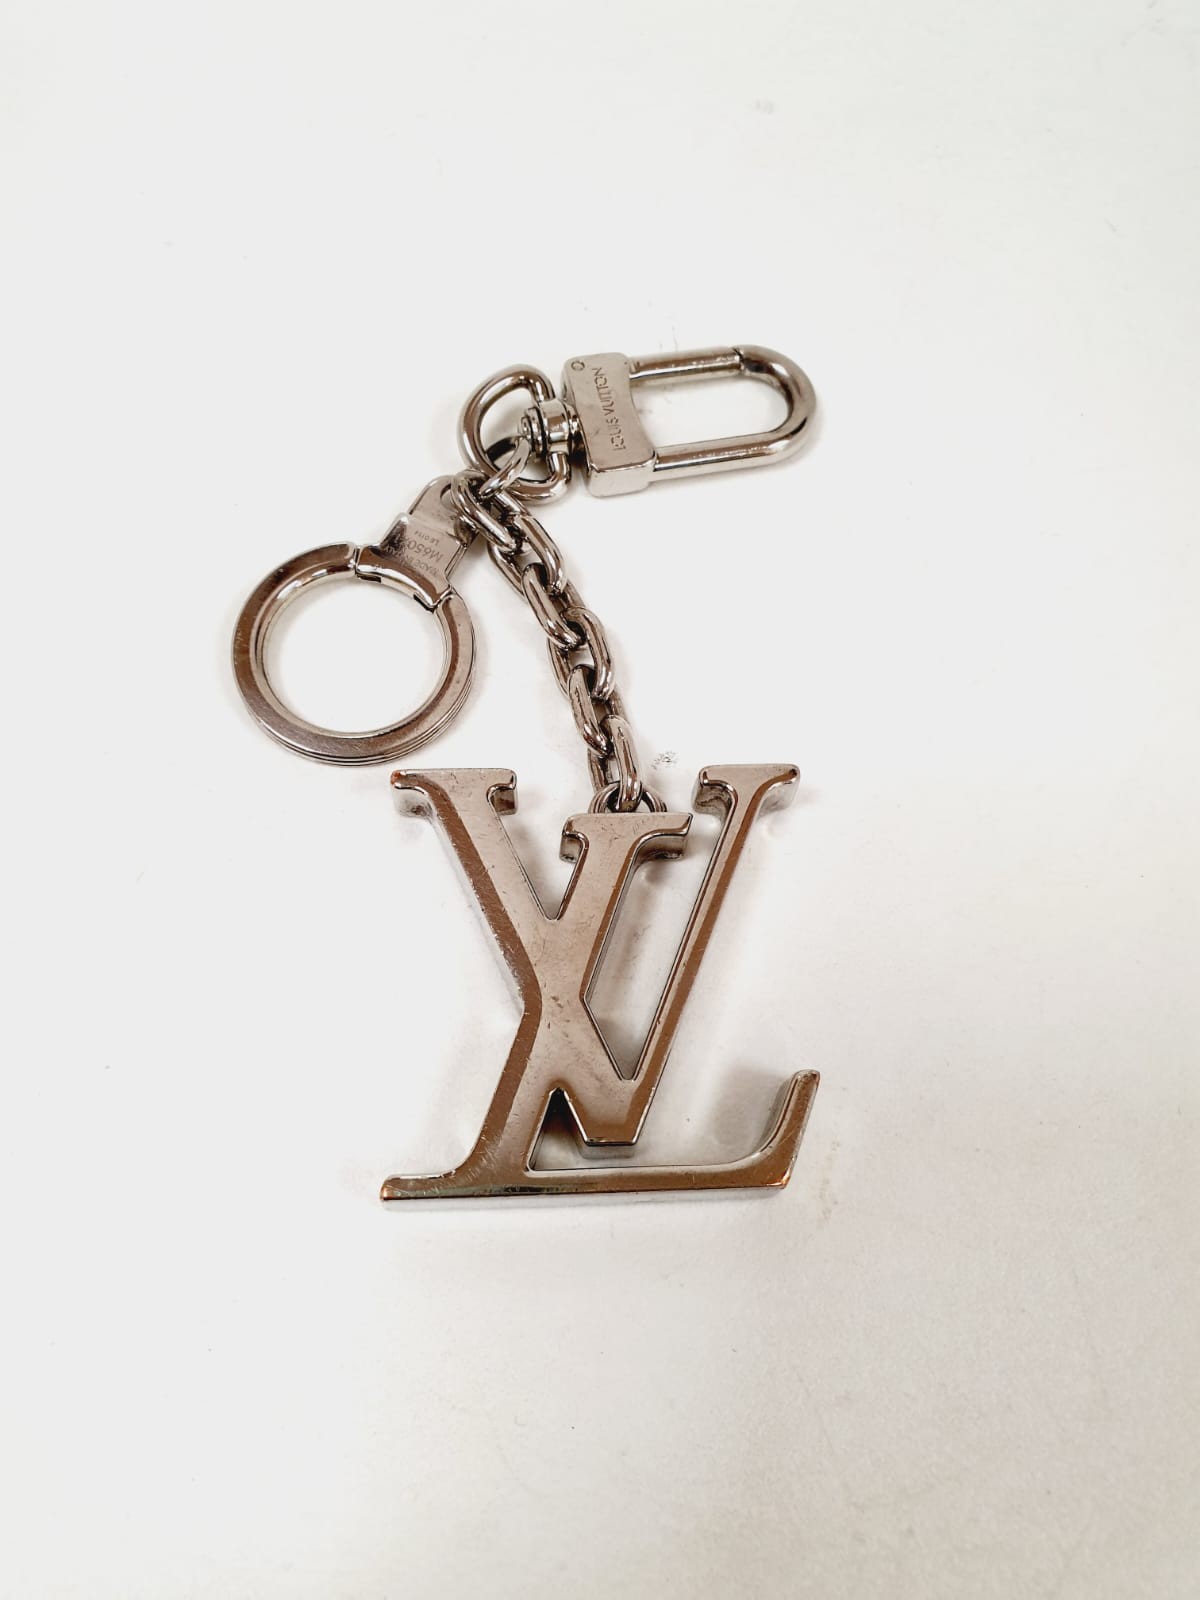 Novo chaveiro com monograma Louis Vuitton em segunda mão durante